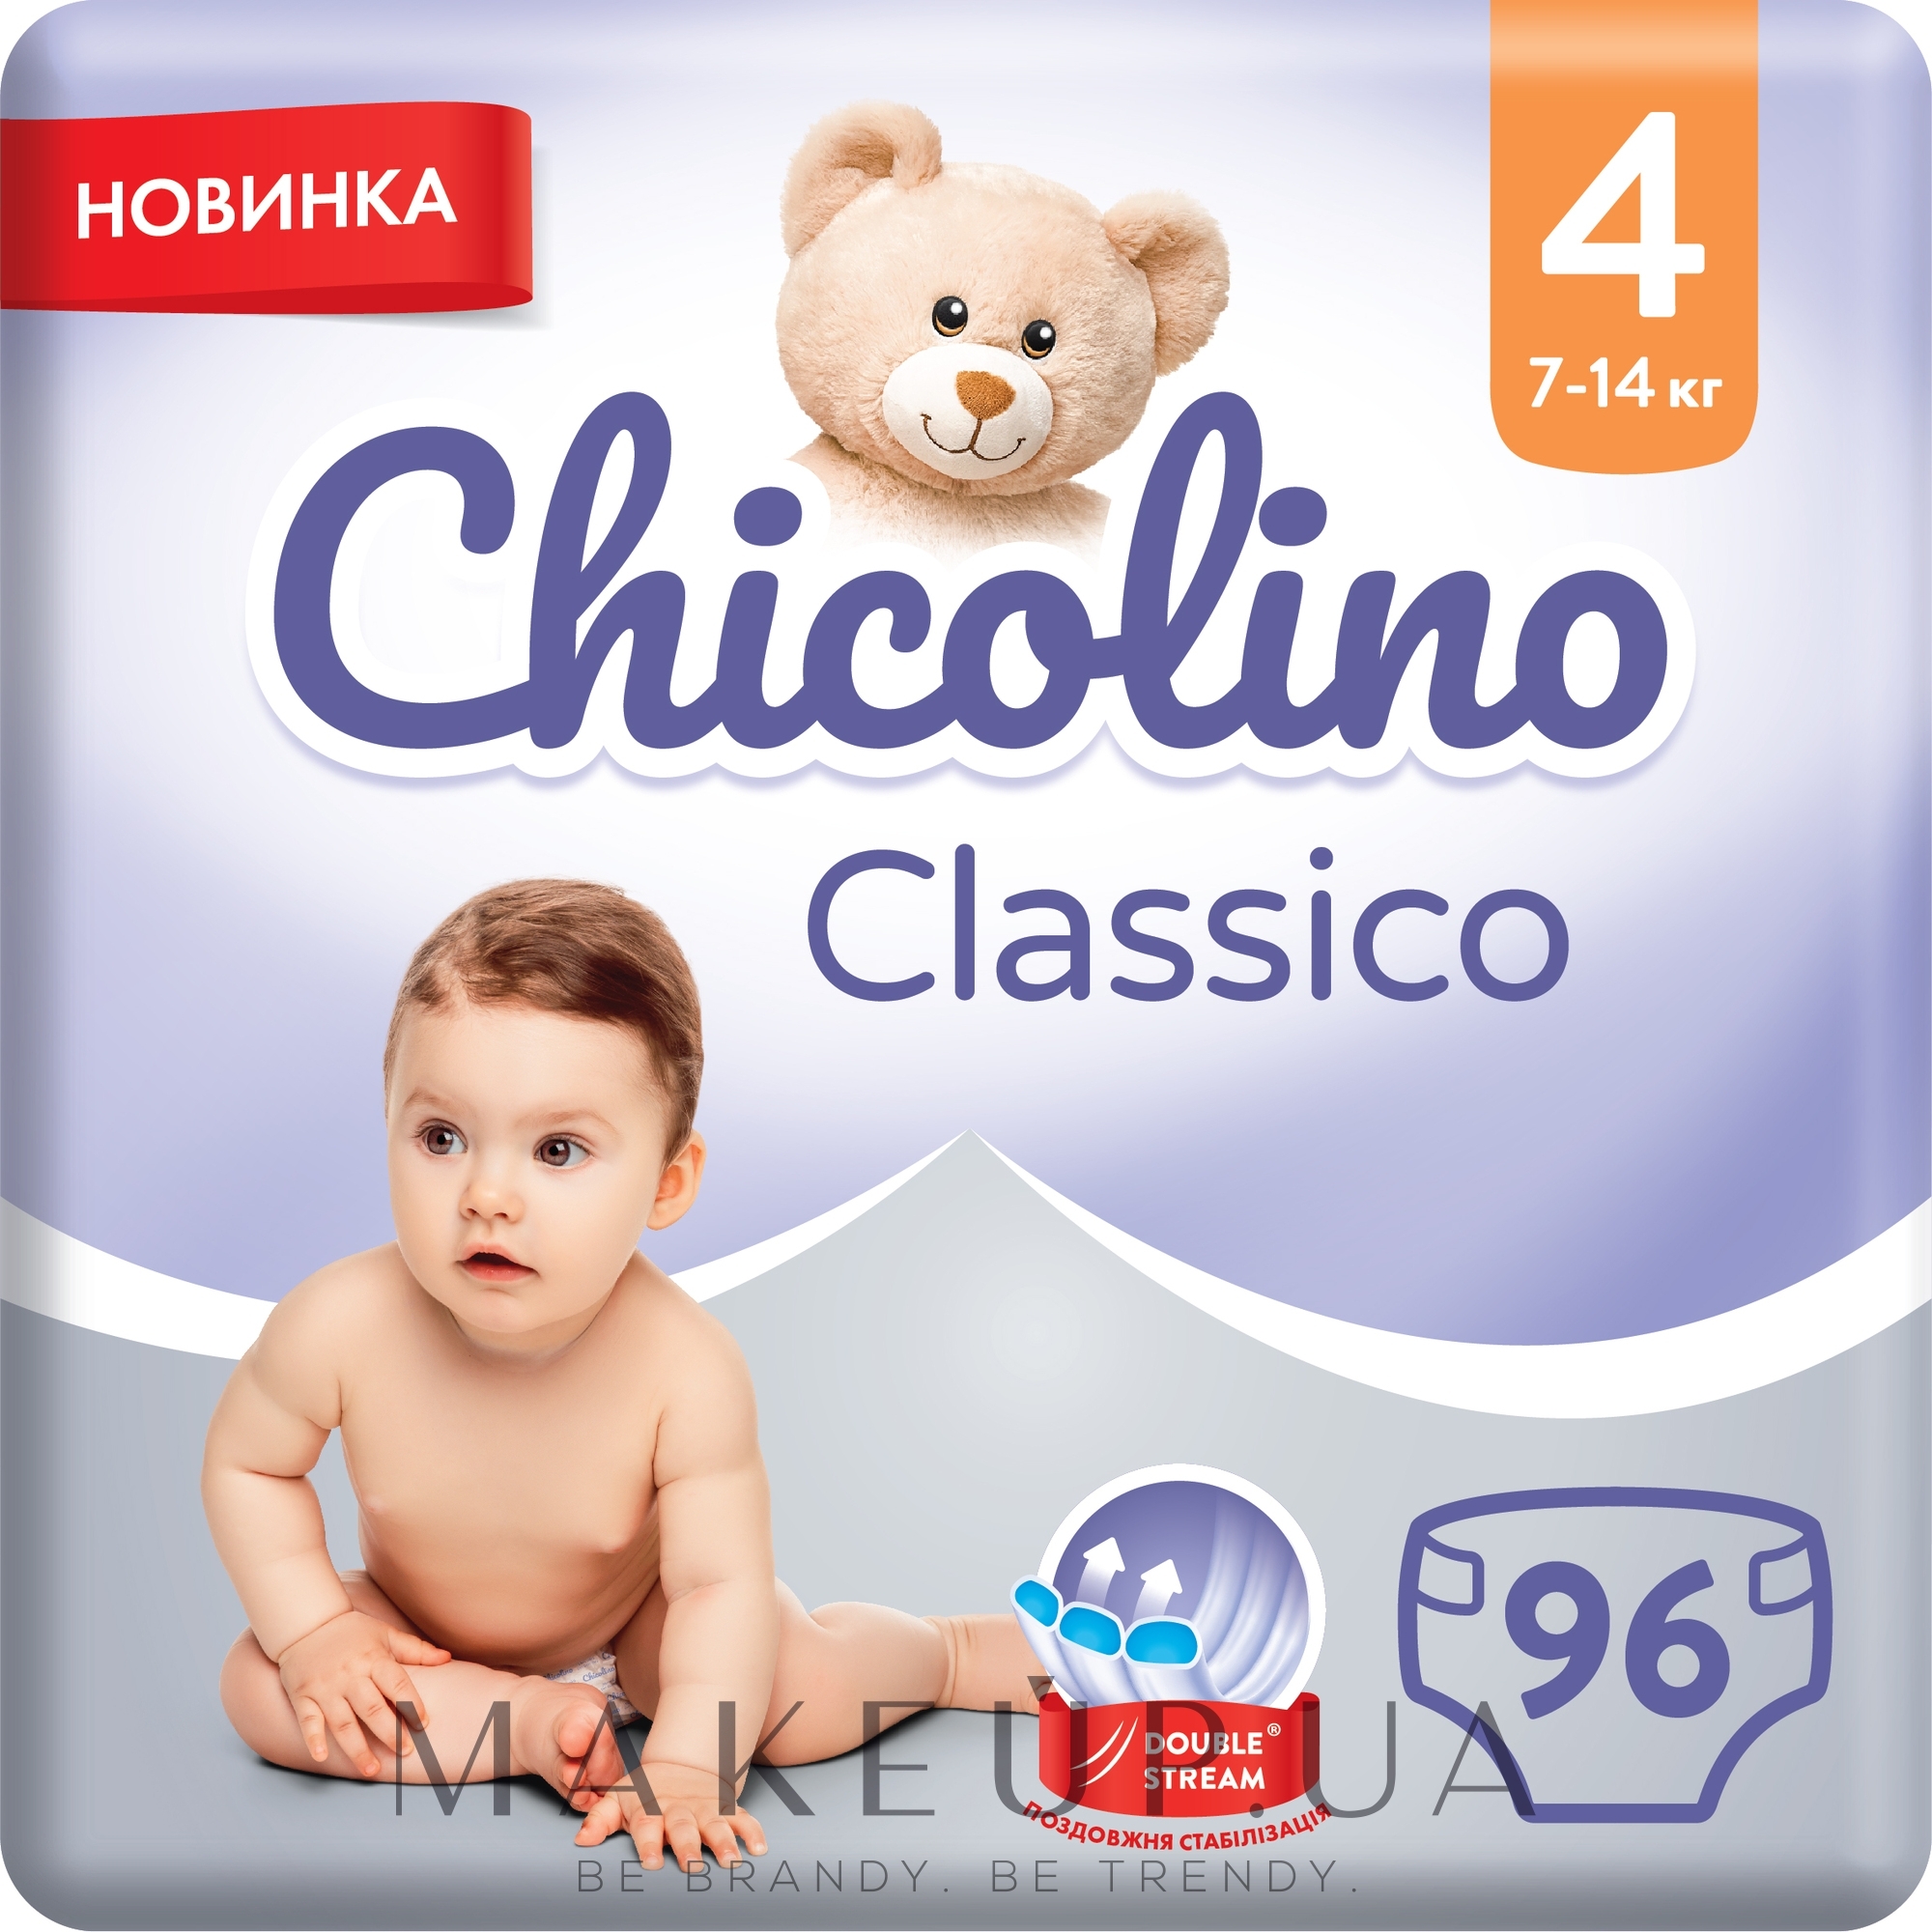 Дитячі підгузки "Classico", 7-14 кг, розмір 4, 96 шт. - Chicolino — фото 96шт